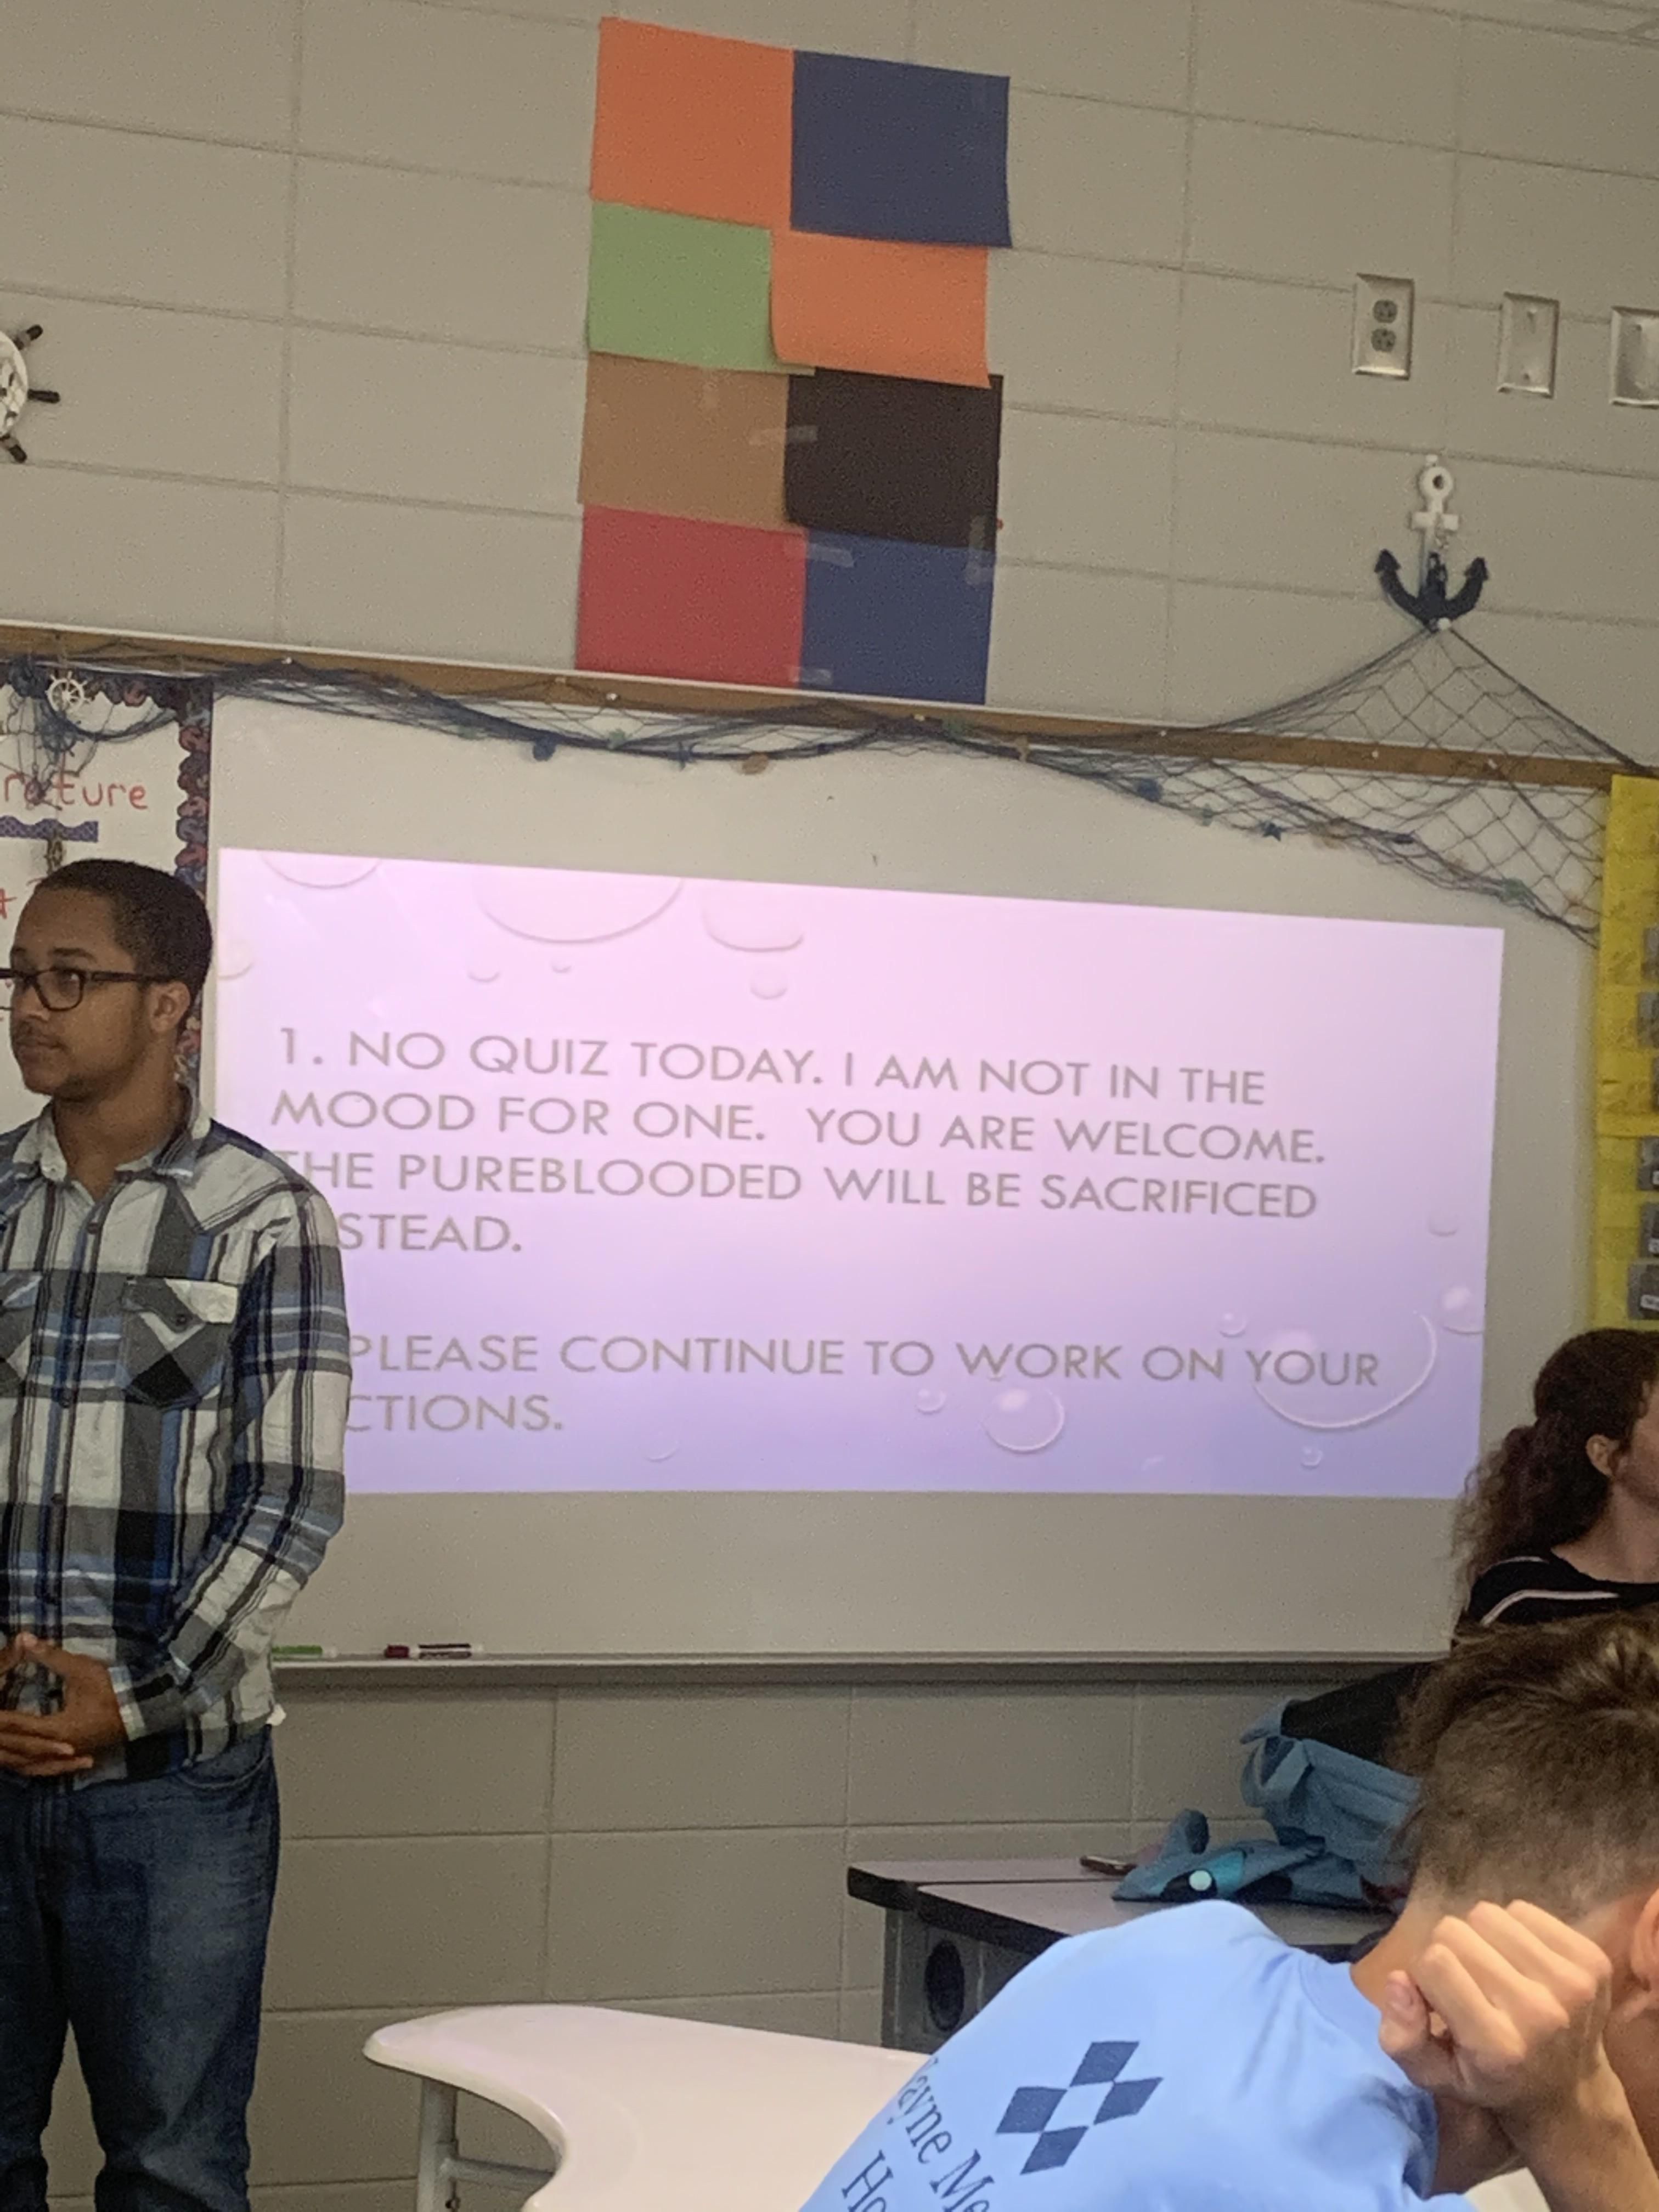 This teacher’s had enough